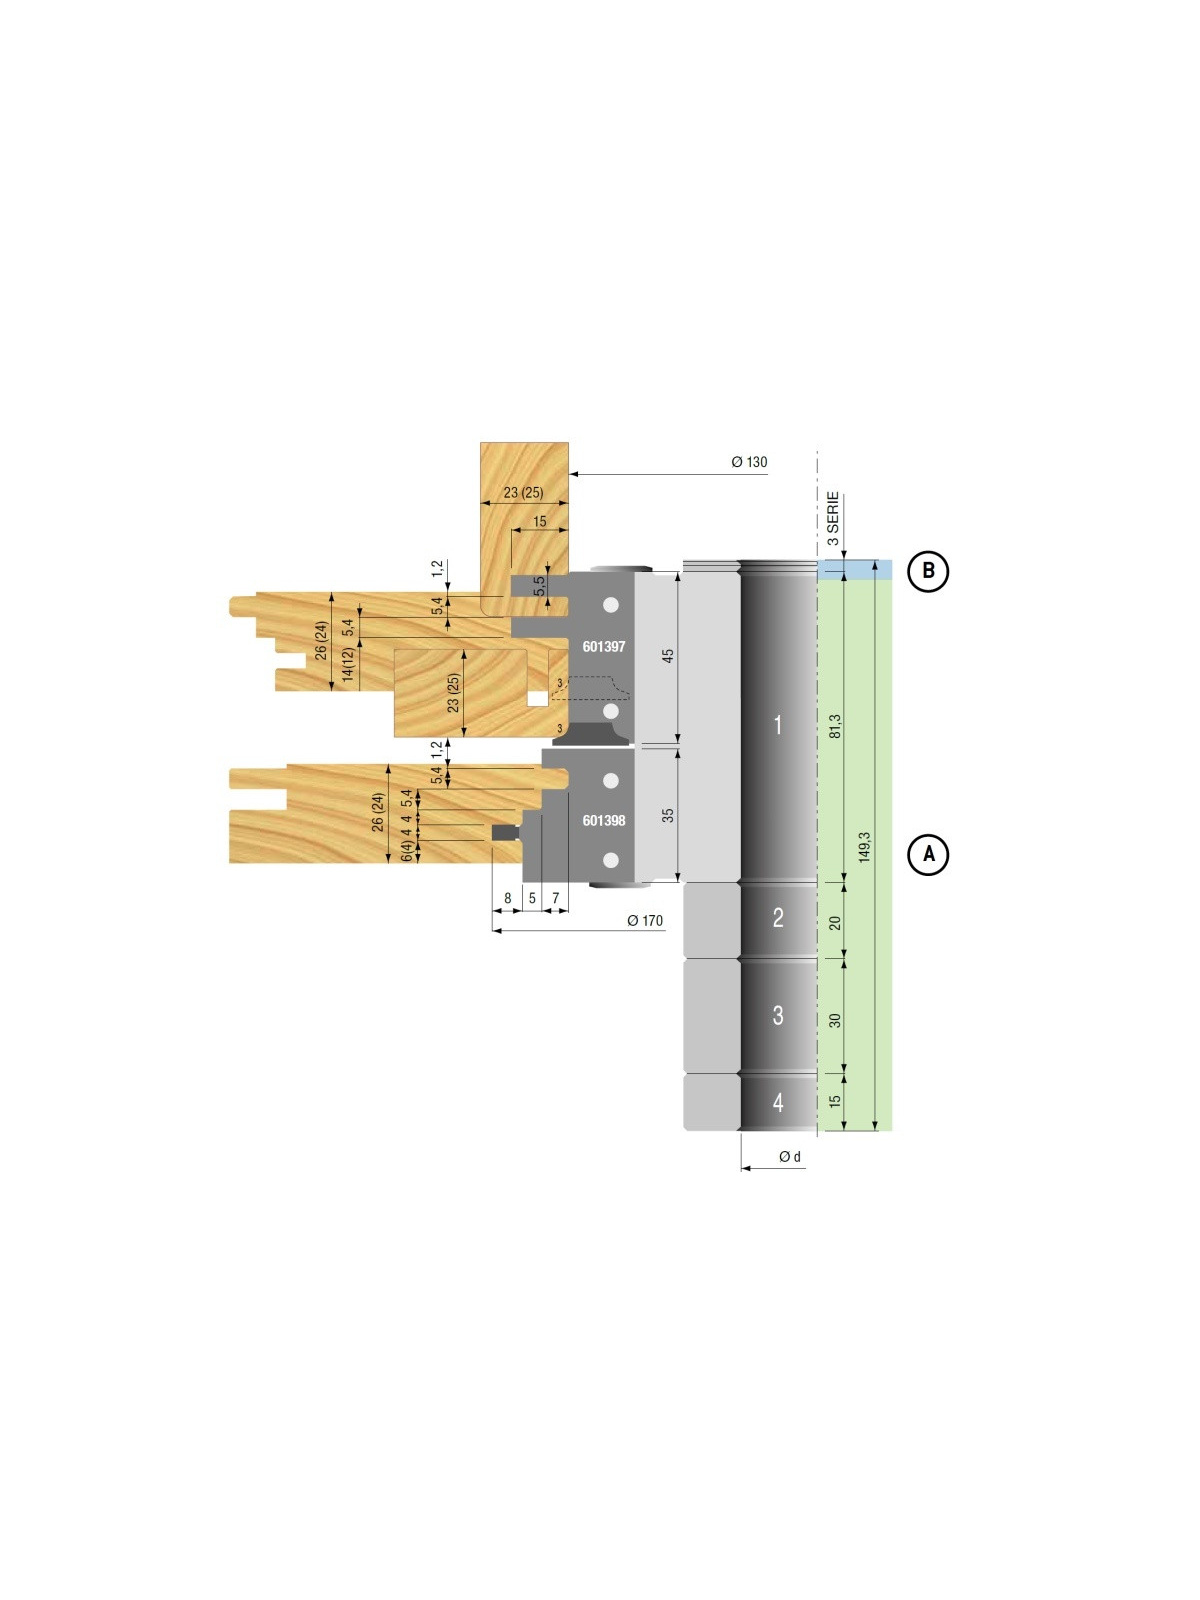 Wisselmes Freeskop voor deurkozijnen asgat 31,75mm ( 1-1/4 inch ) Stark | JVL-Europe